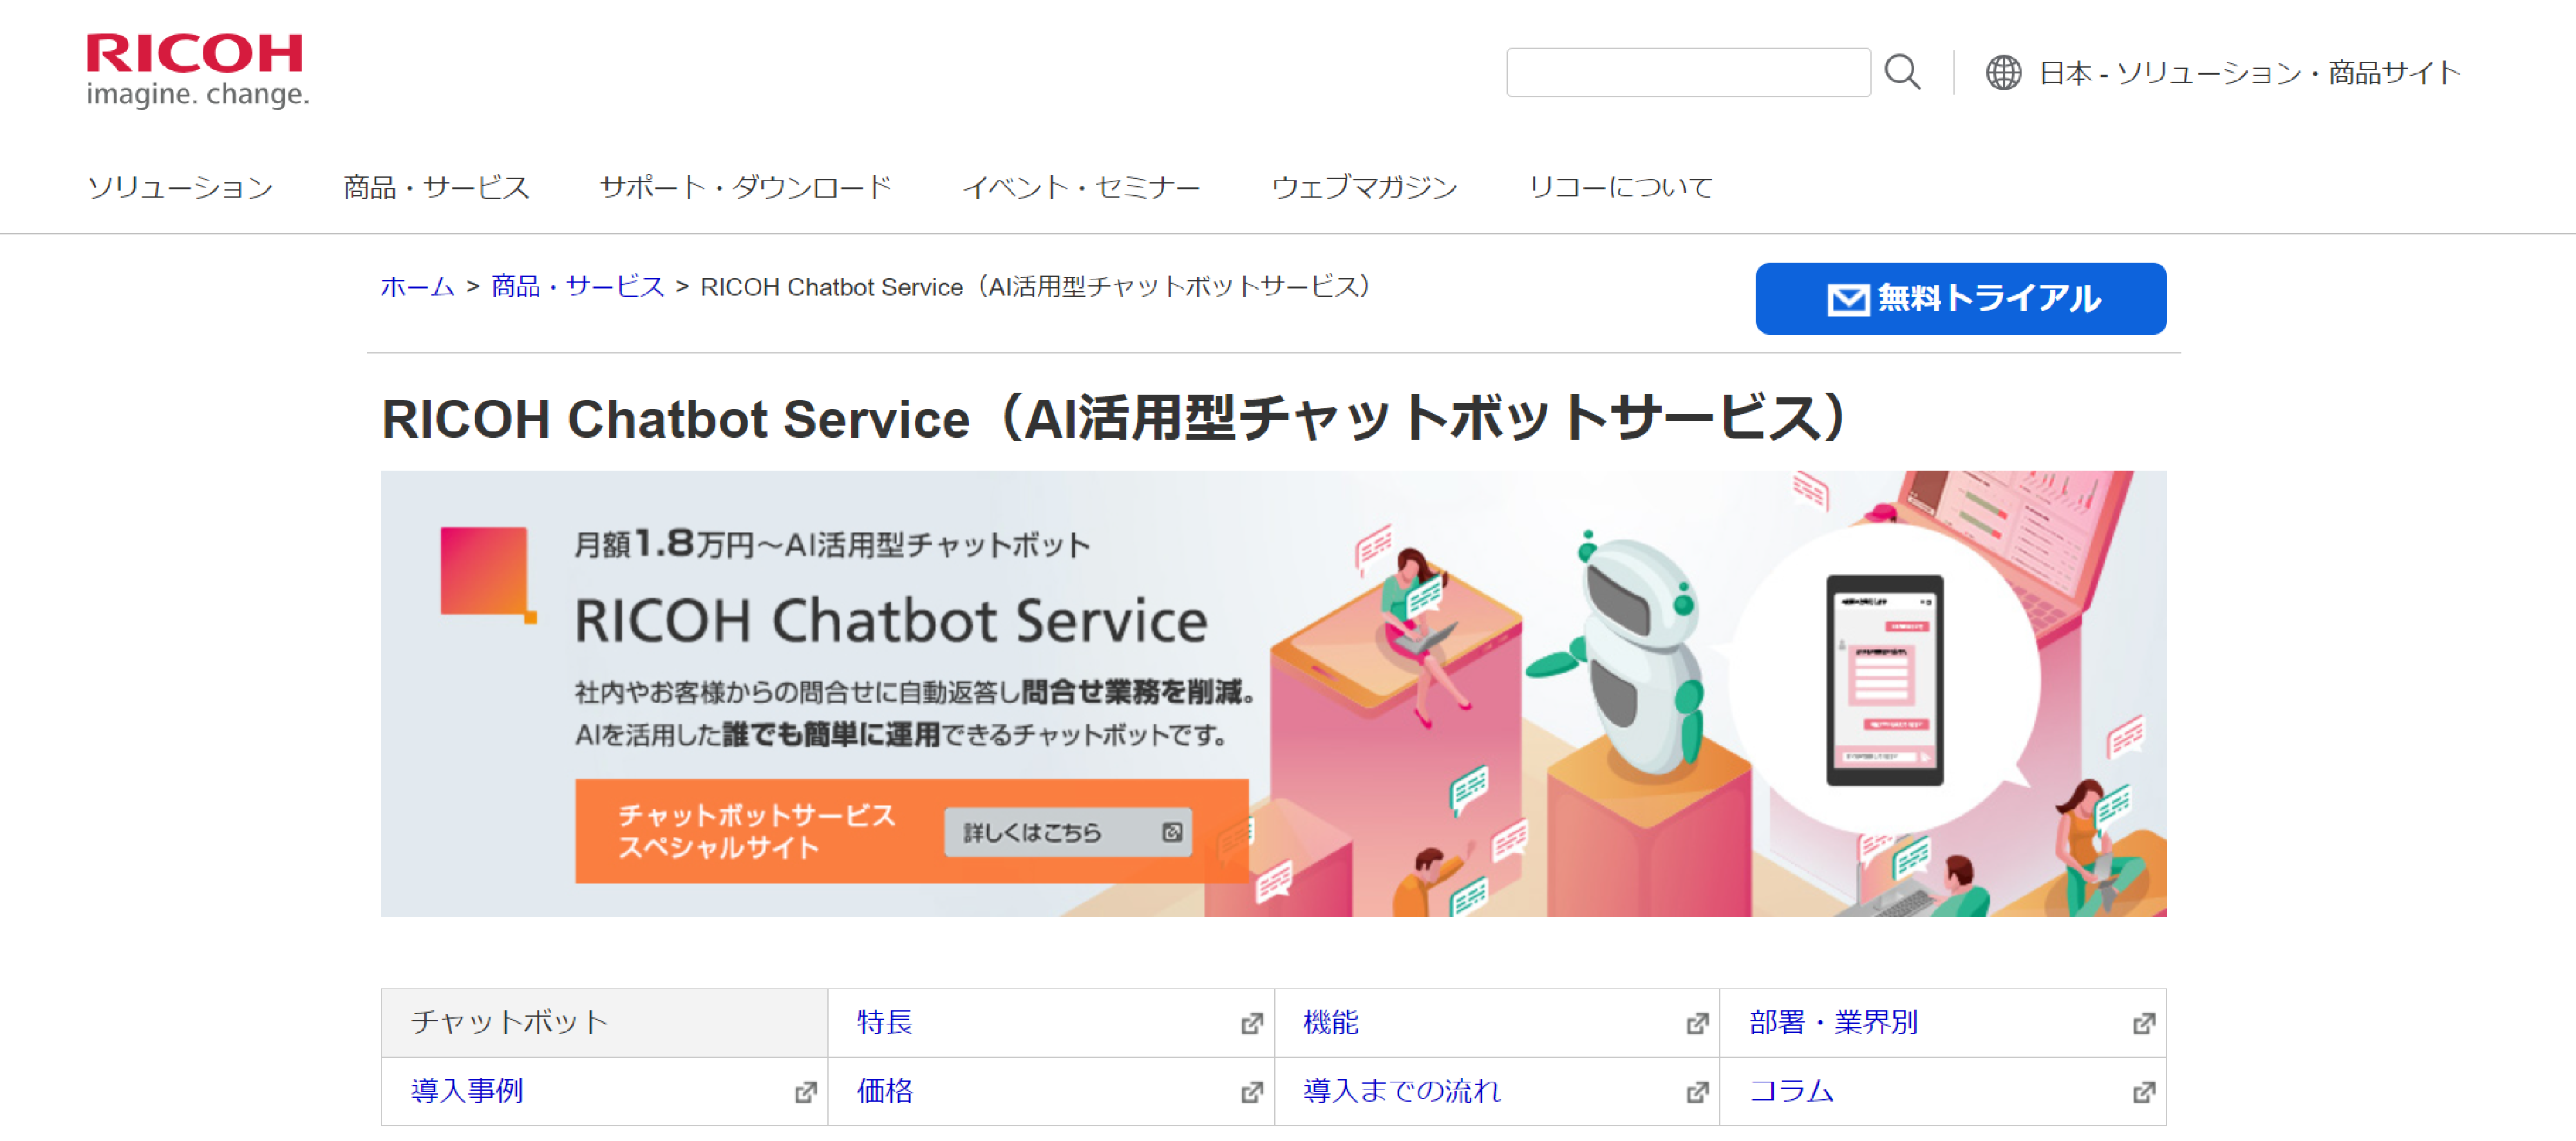 「RICOH Chatbot Service」の製品サイトファーストビュー